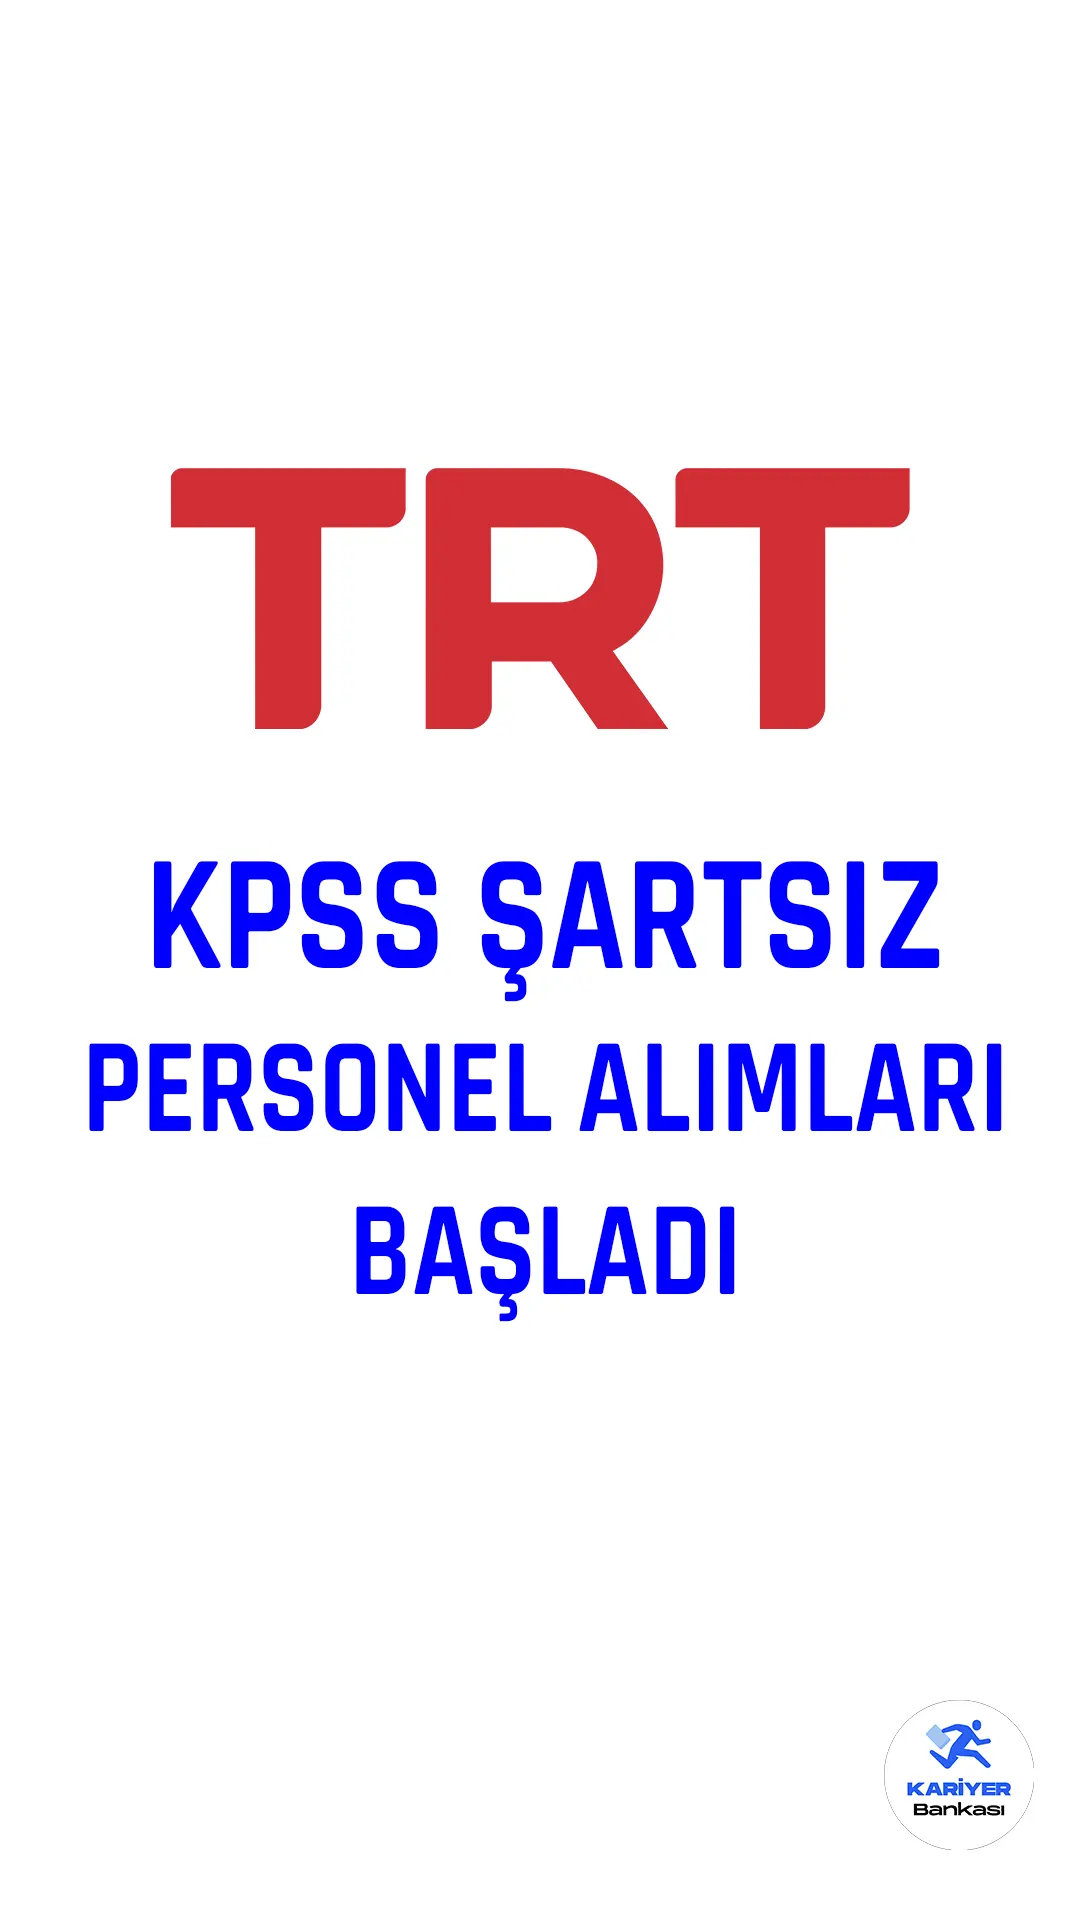 TRT resmi kariyer sayfası üzerinden, yeni iş fırsatlarını açıkladı. Lisans mezunları için birçok yeni iş imkanı sunan TRT , farklı alanlarda toplam 25 iş ilanı yayınladı.